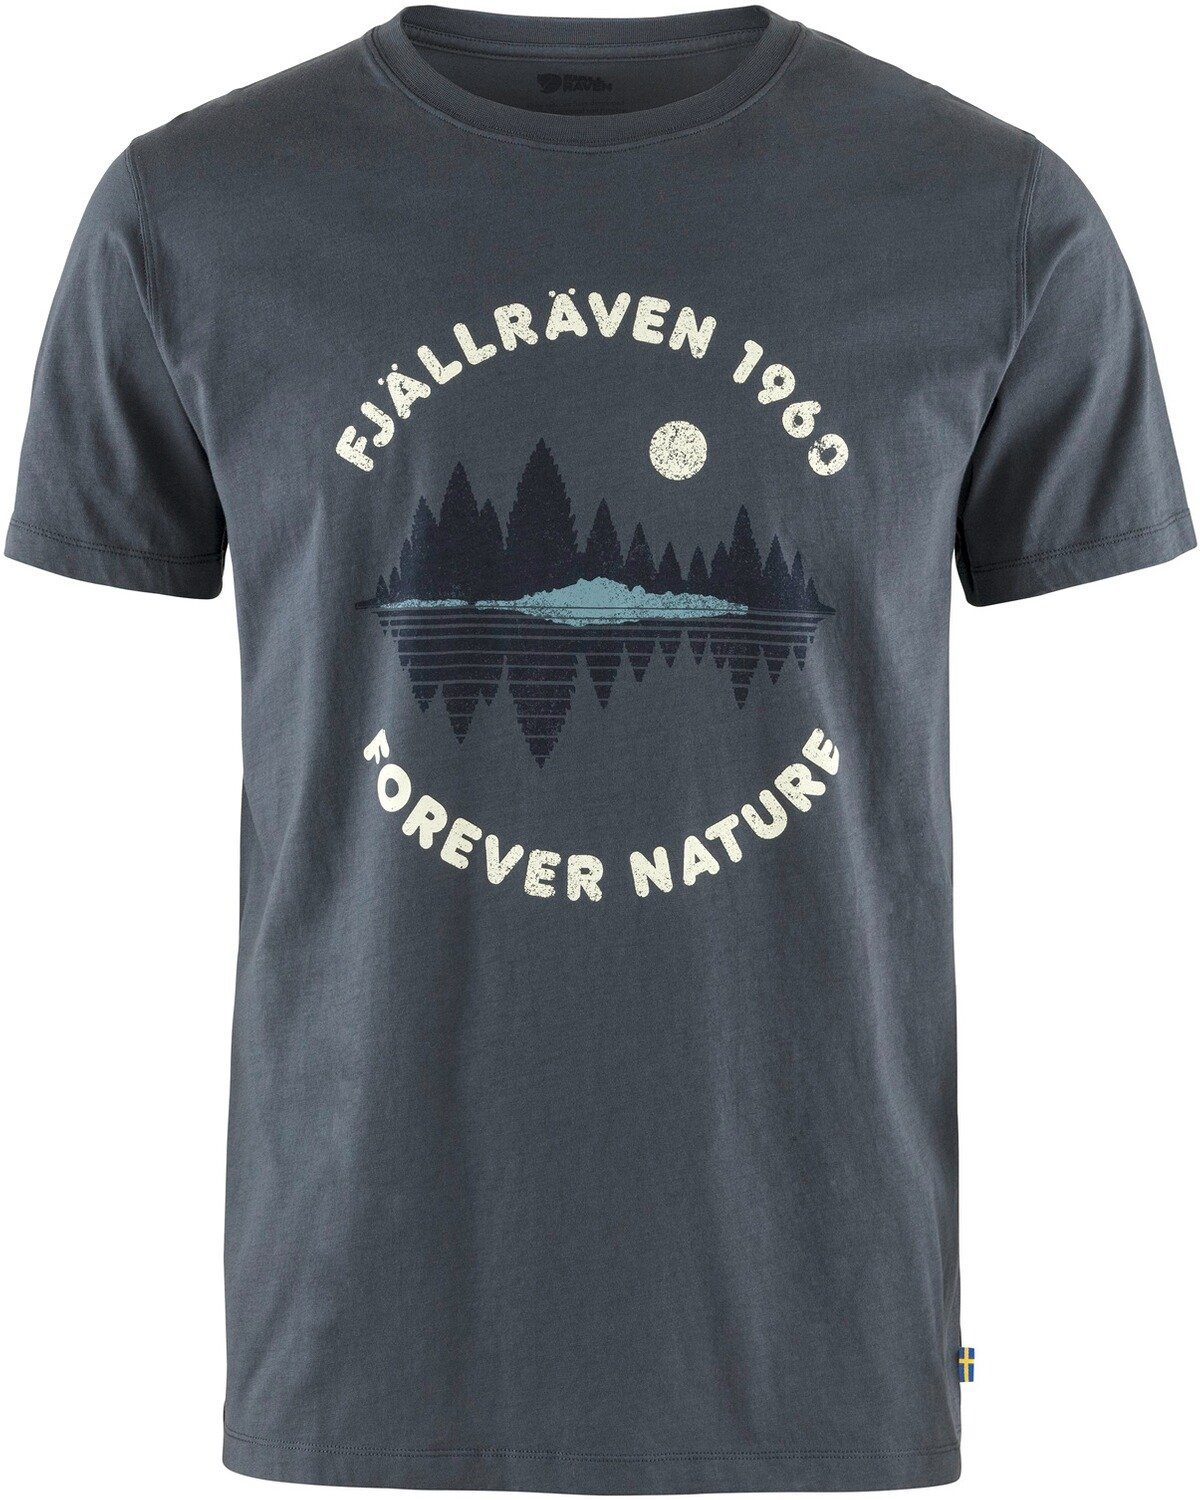 T-Shirt Fjällräven Navy Mirror T-Shirt Forest